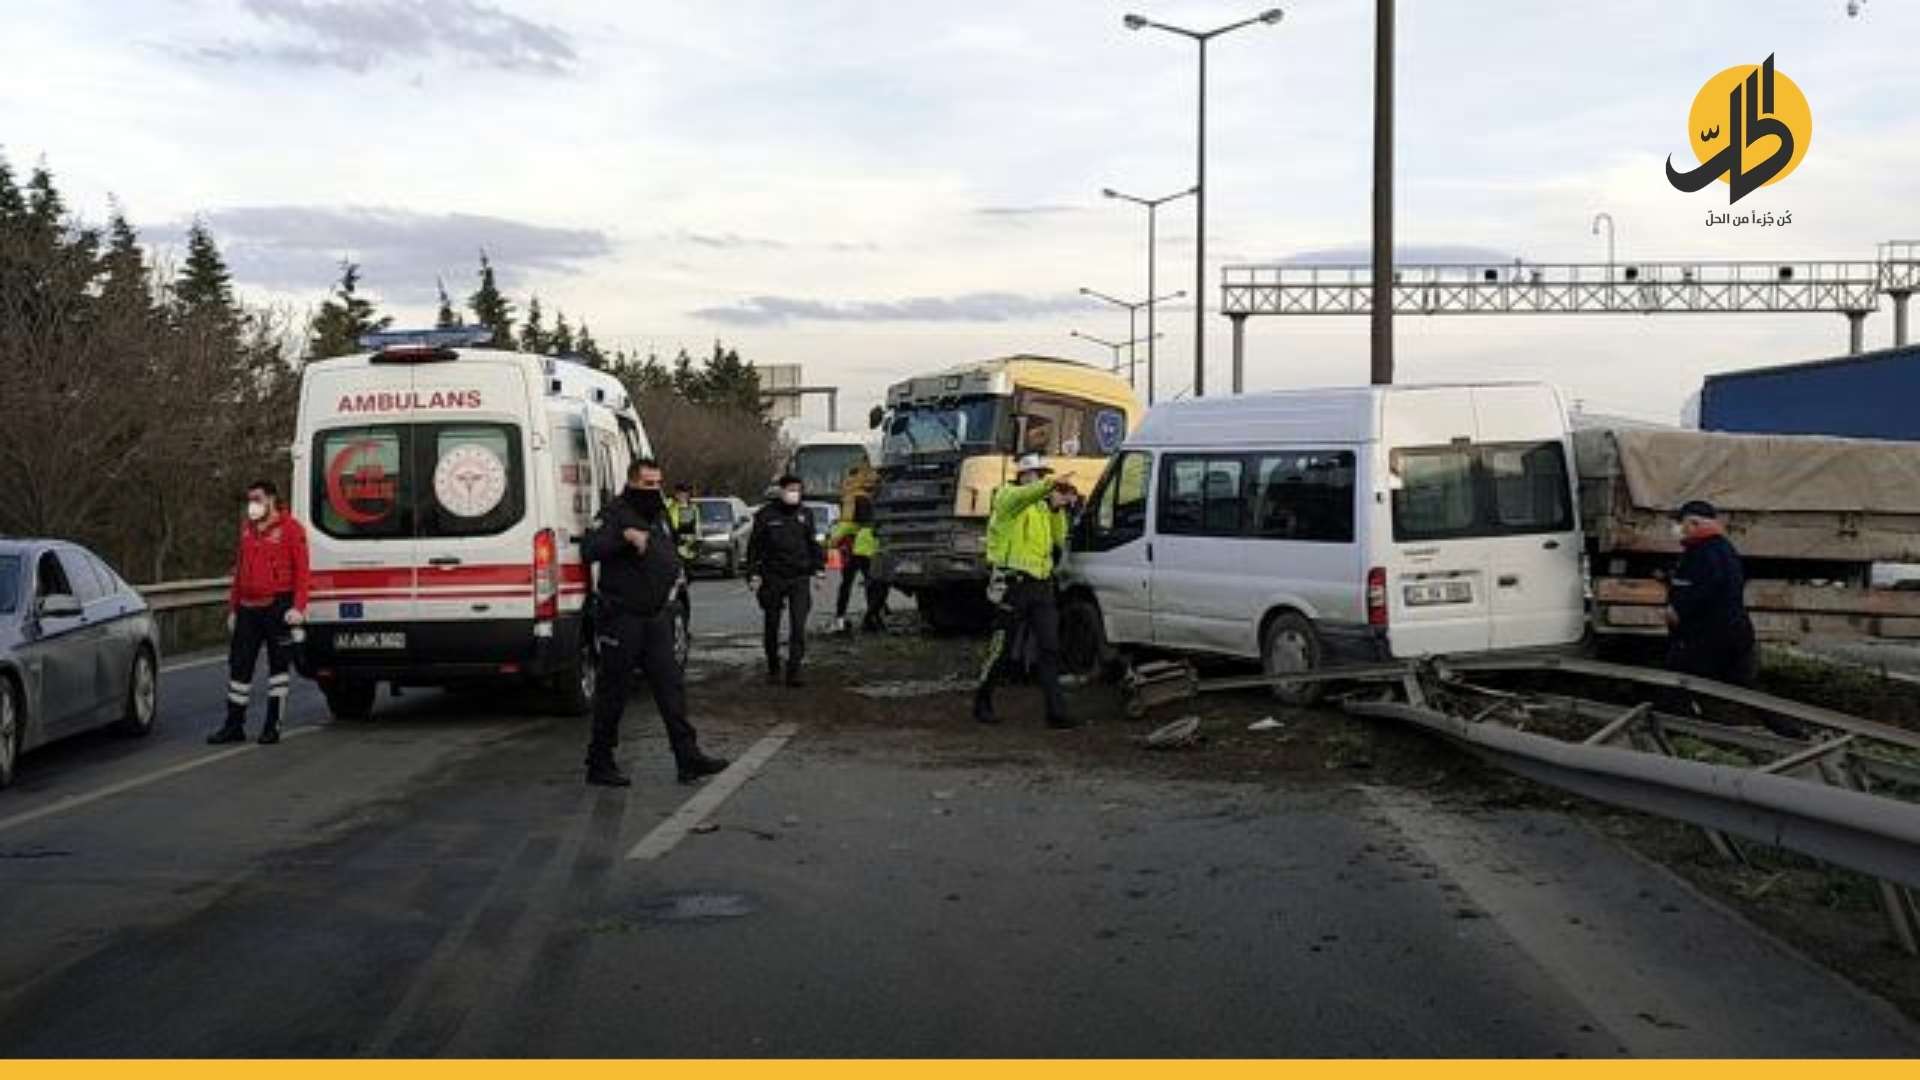 نتيجة الاستهتار بسلامتهم .. العمالة السورية ضحية لحوادث سير متكررة في تركيا